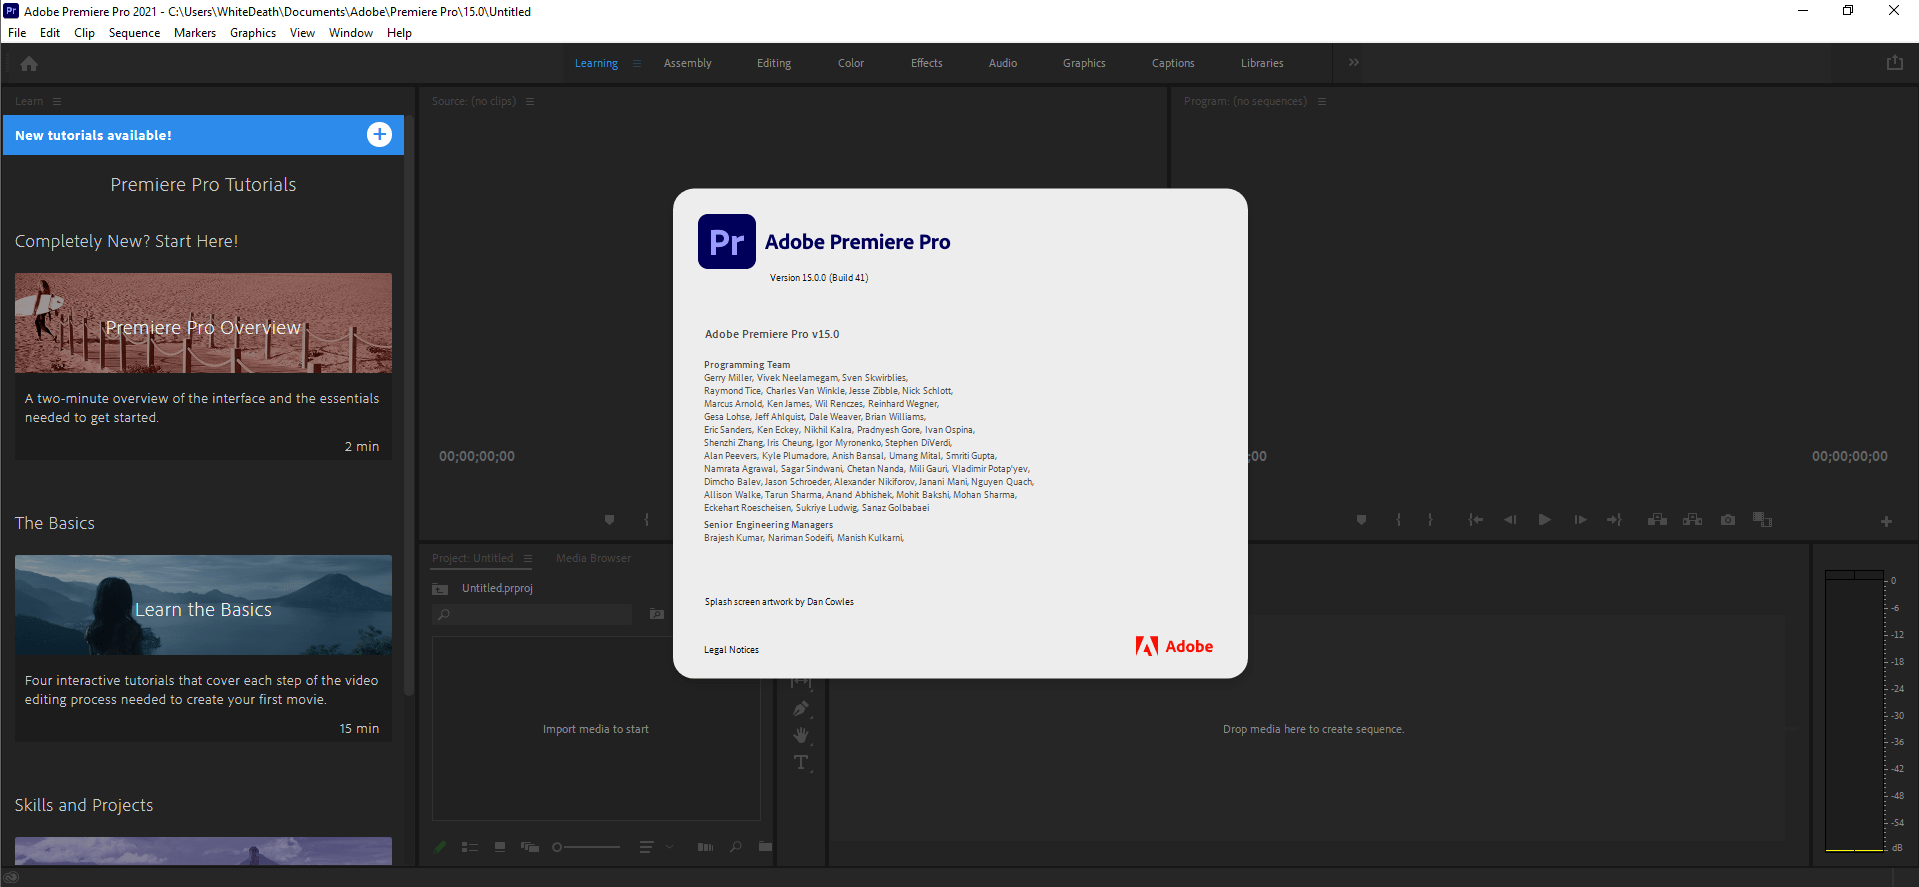 Adobe Premiere Pro 2021 v15.0.0.41 (x64) Multilingual